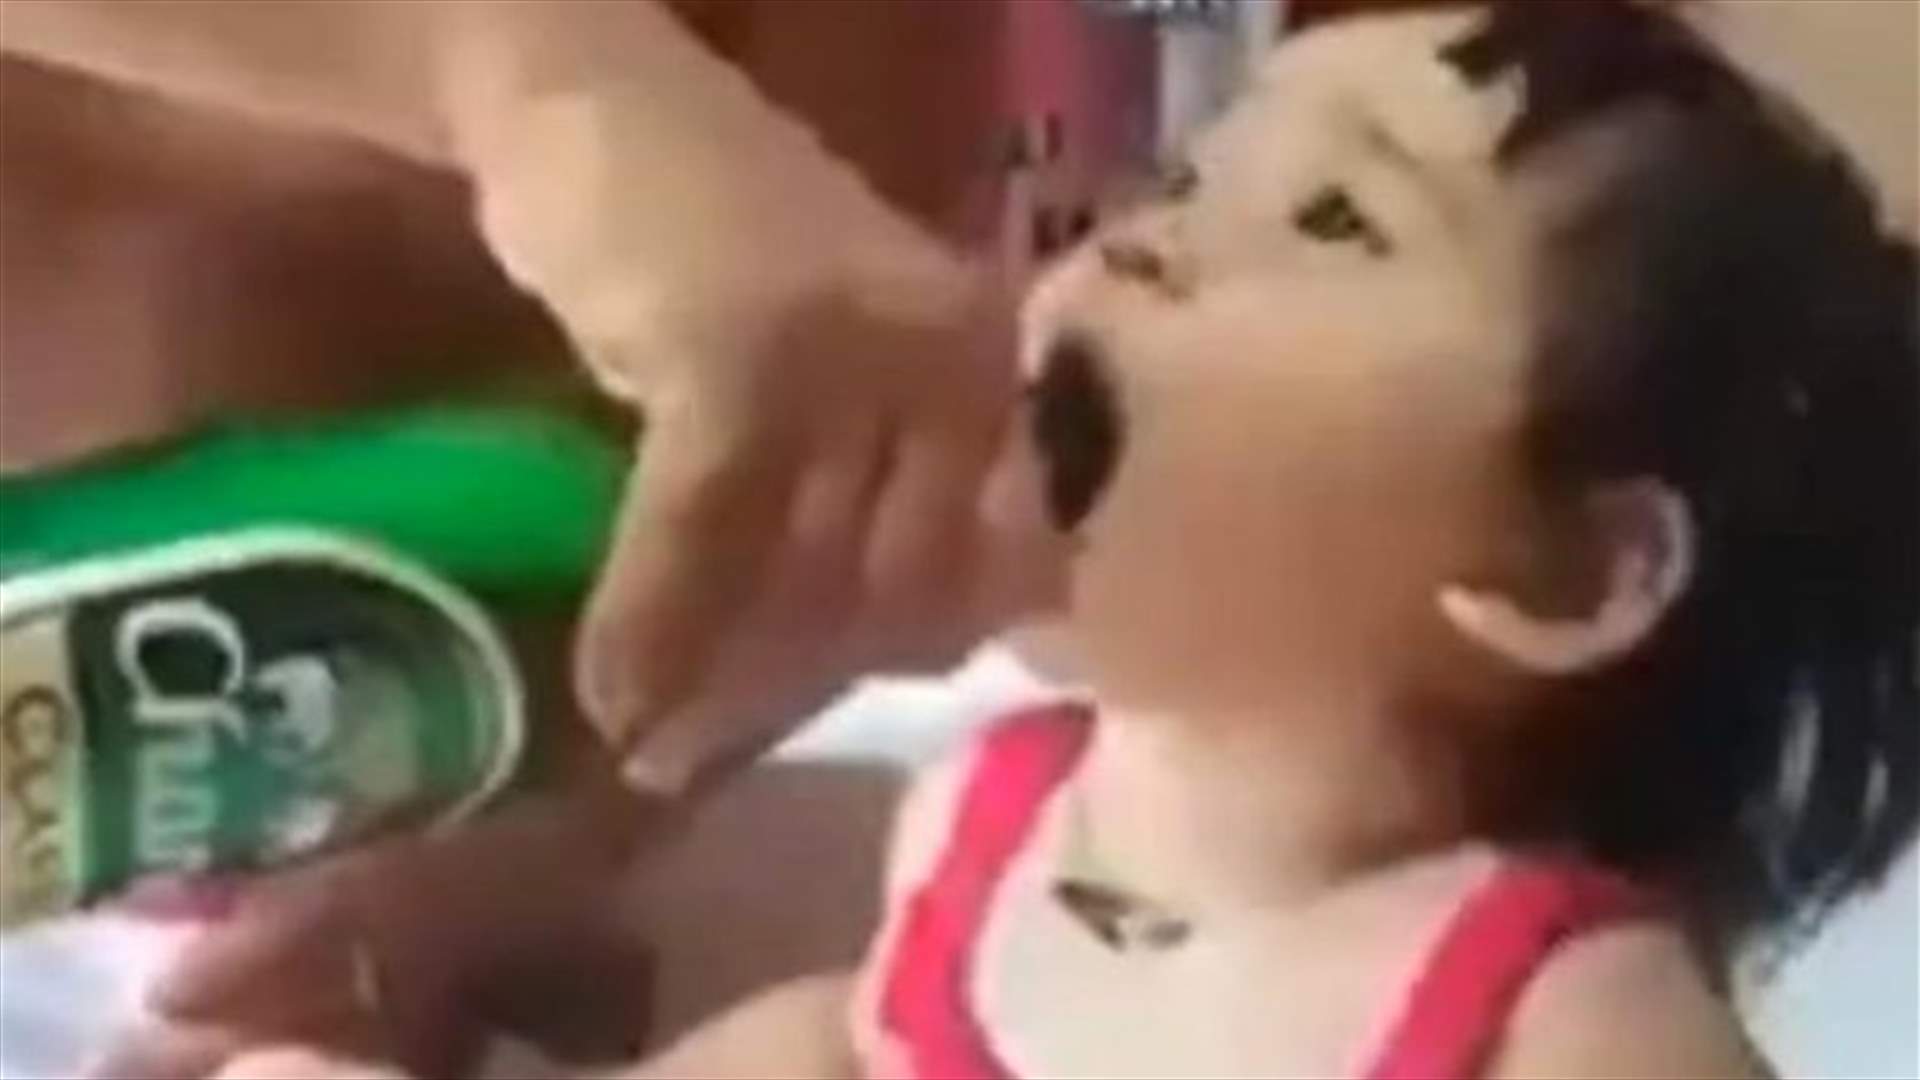 بالفيديو: أبّ يُشرب ابنته الجعة وينال الكثير من الانتقادات!